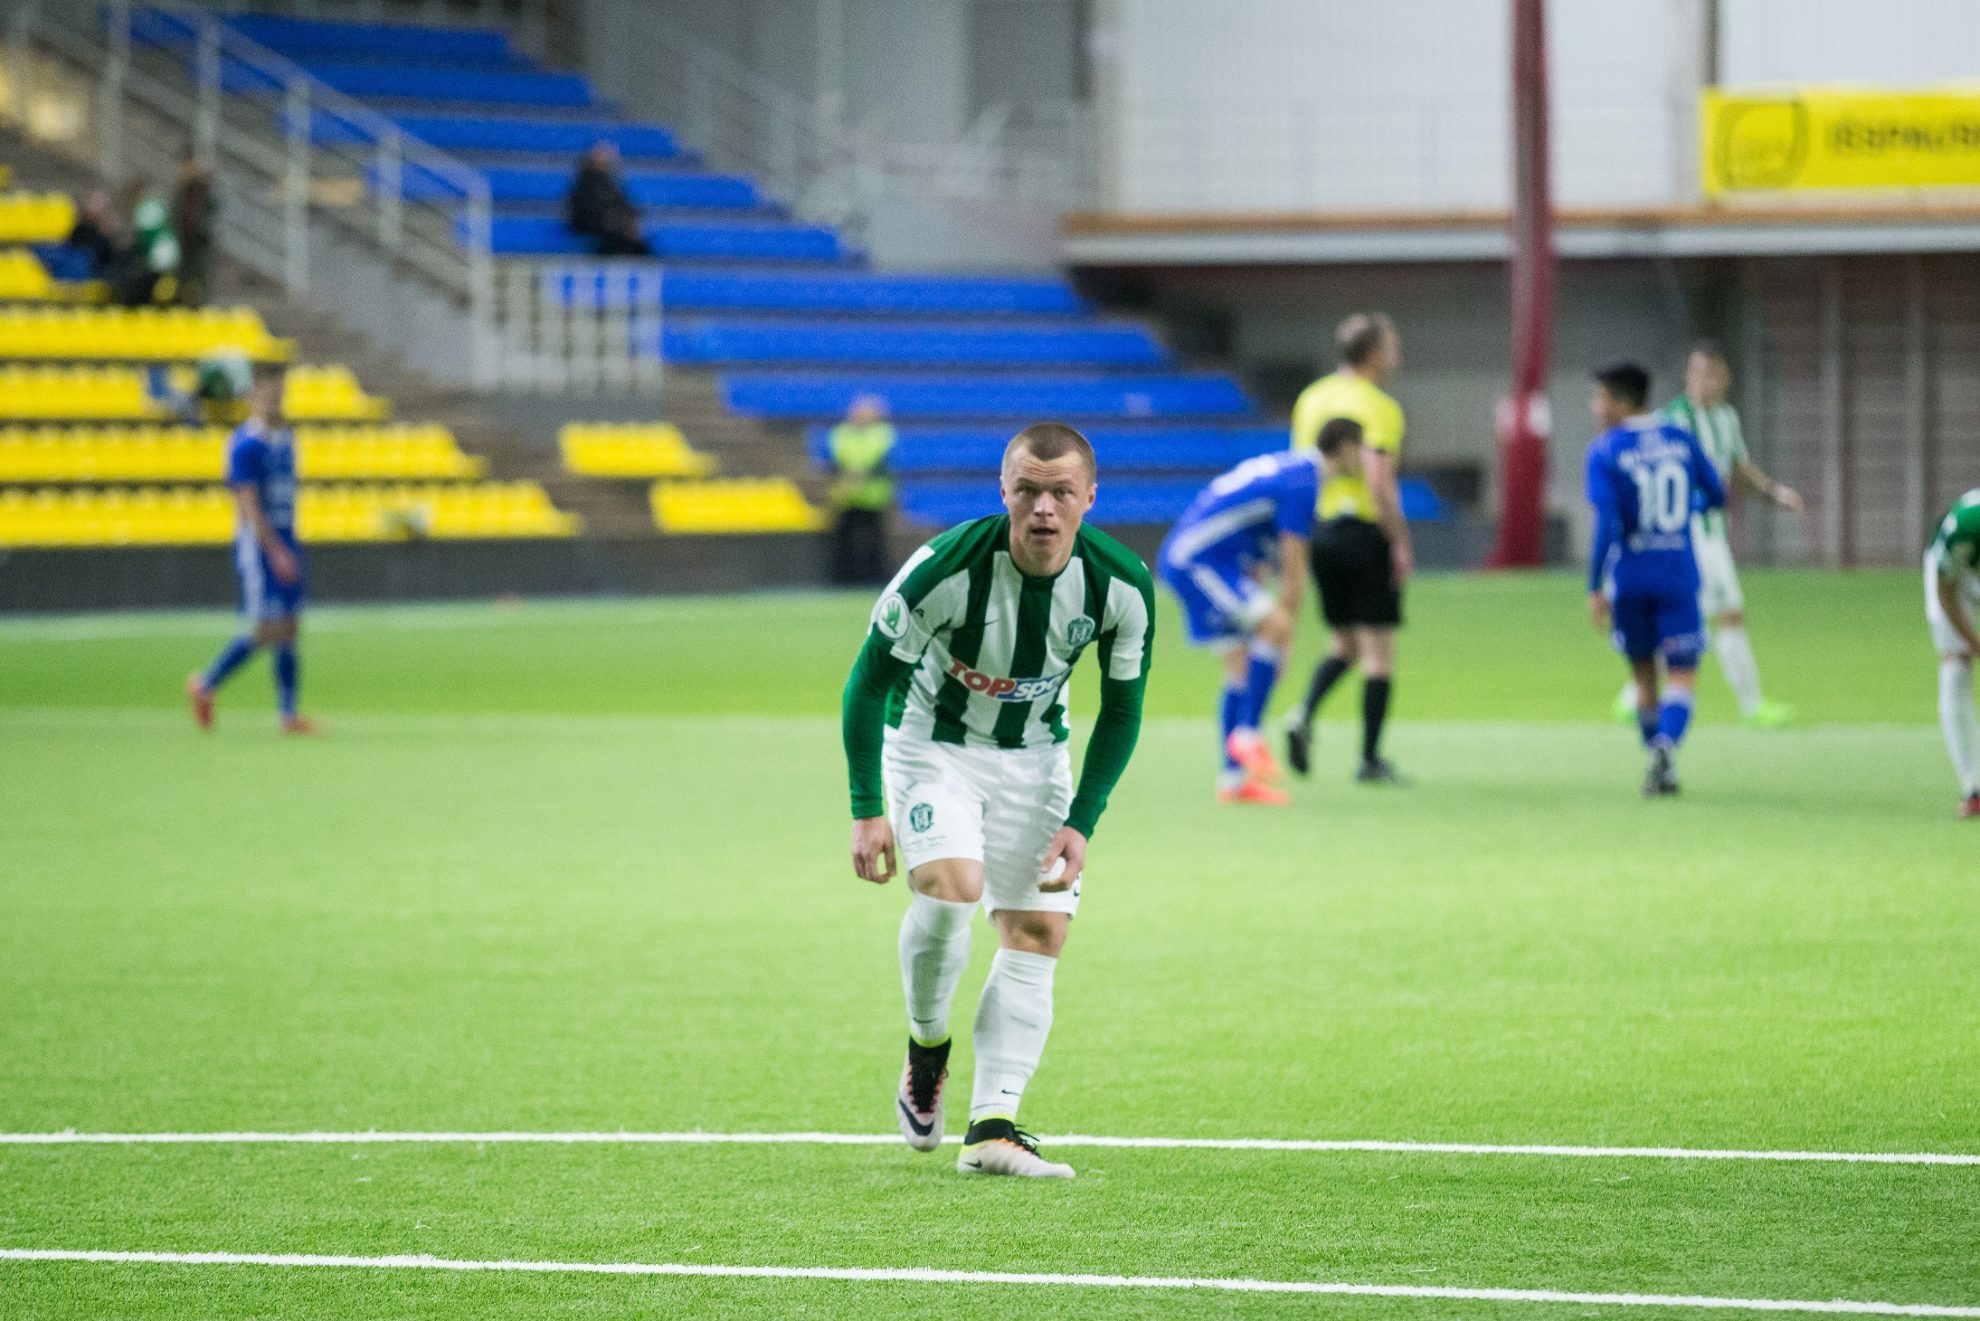 Šalies čempionai Vilniaus „Žalgiris“ pasiekė antrąją pergalę šį sezoną, kai ketvirtadienio vakarą „Sportimoje“ 1:0 įveikė Kauno „Žalgirį“.